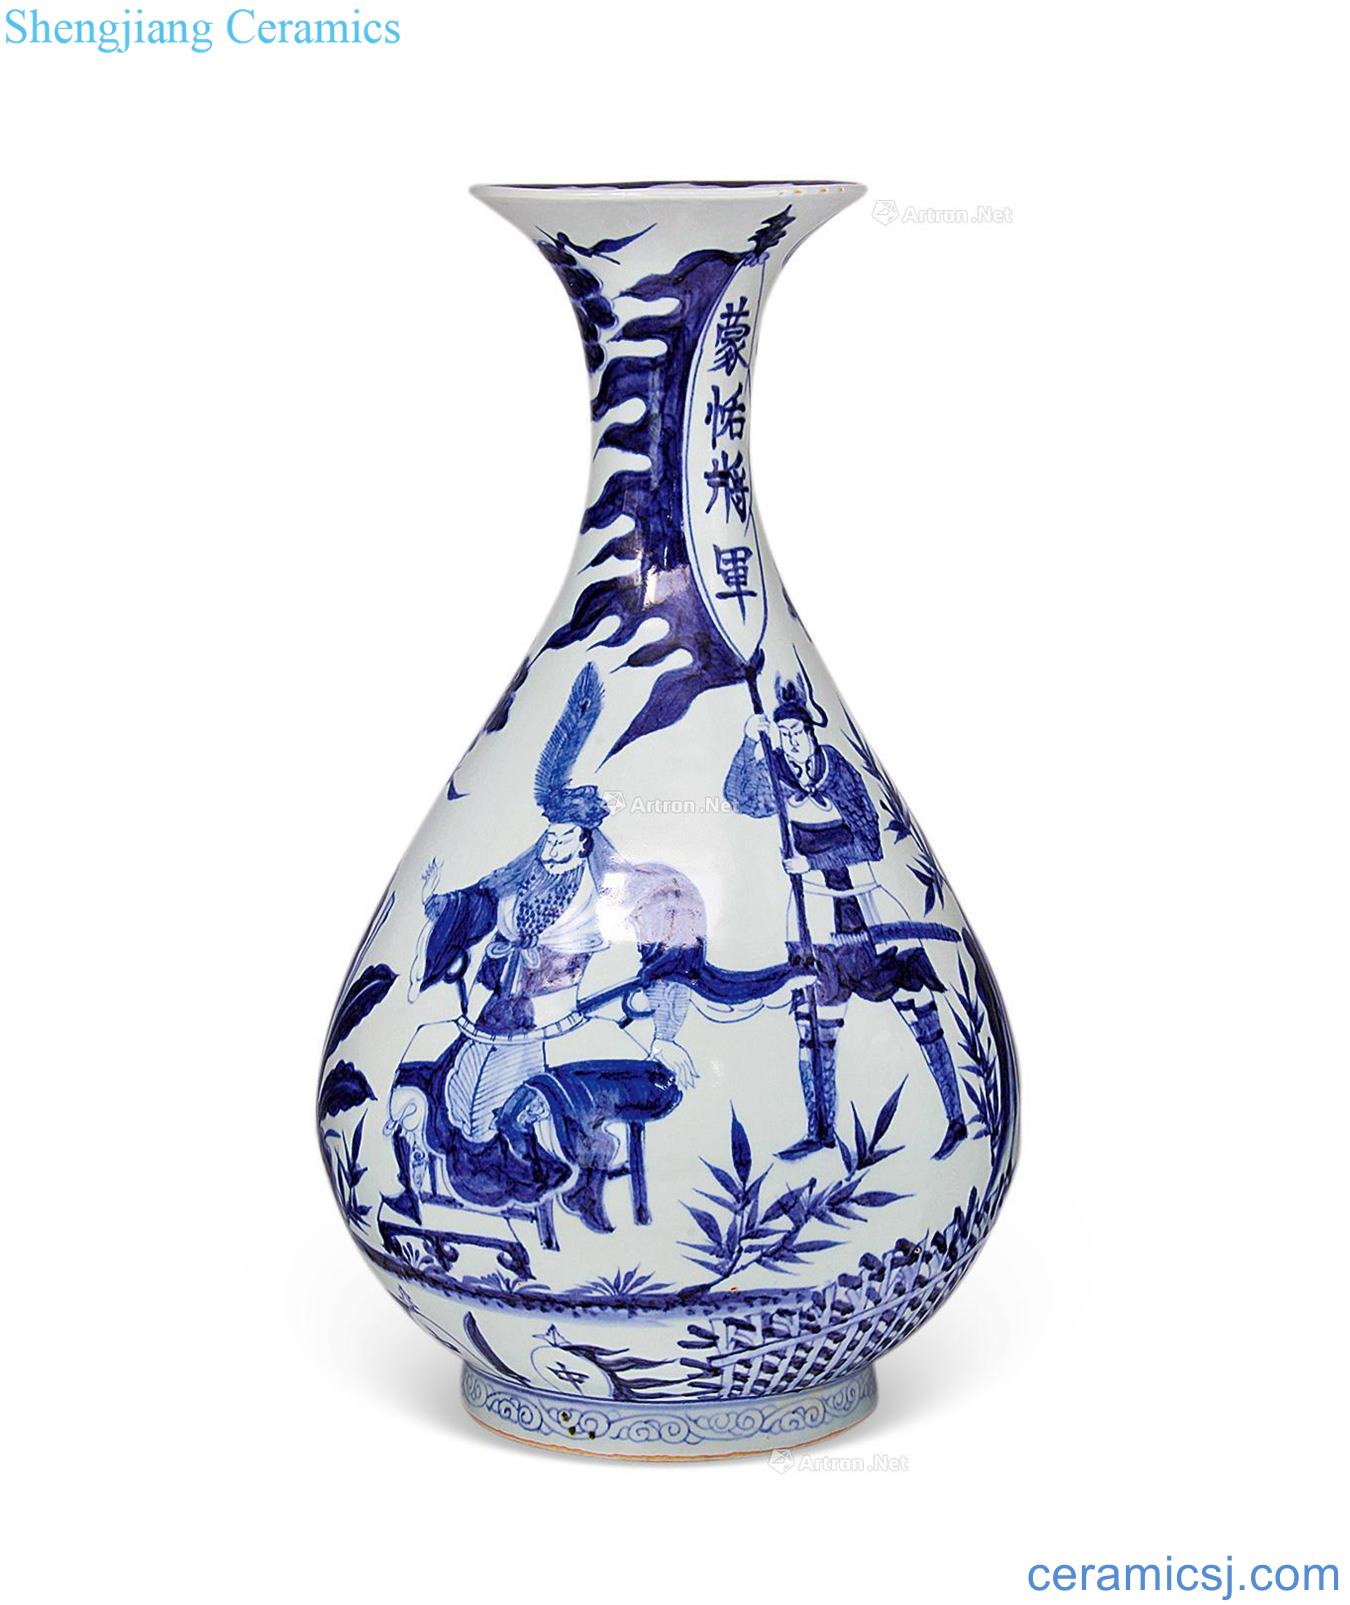 yuan Meng tien general blue okho spring bottle